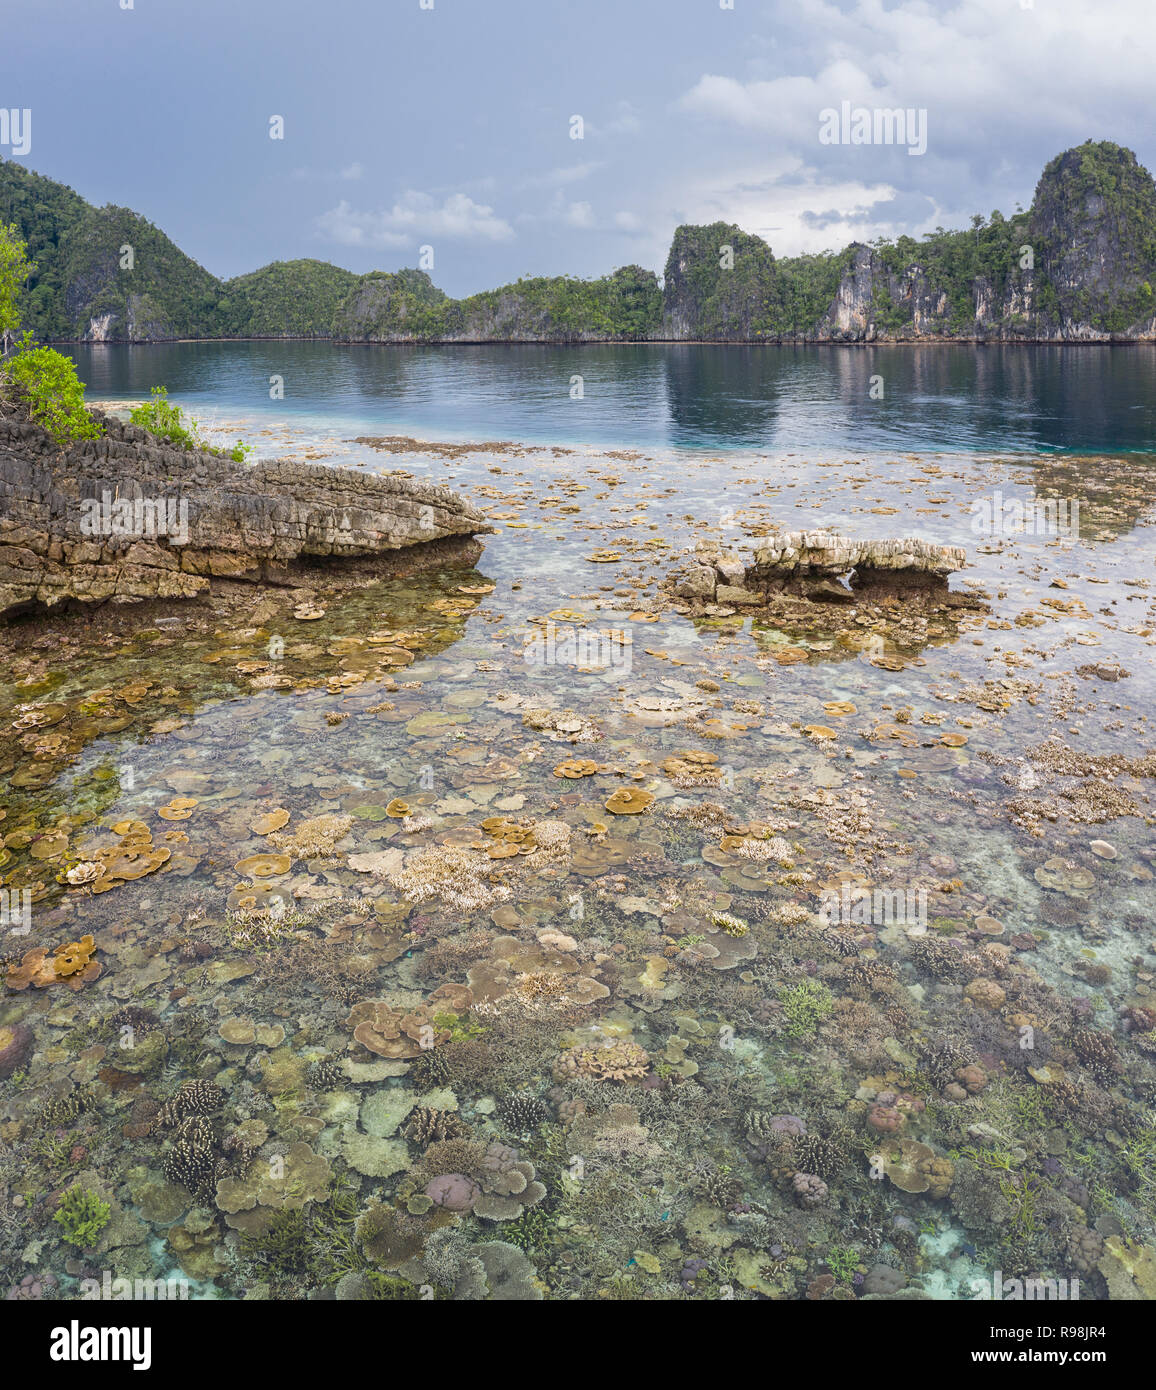 Remote Kalkstein Inseln in Raja Ampat, Indonesien, sind von gesunden Korallenriffen umgeben. Diese artenreichen Region ist für seine marine Artenvielfalt bekannt. Stockfoto